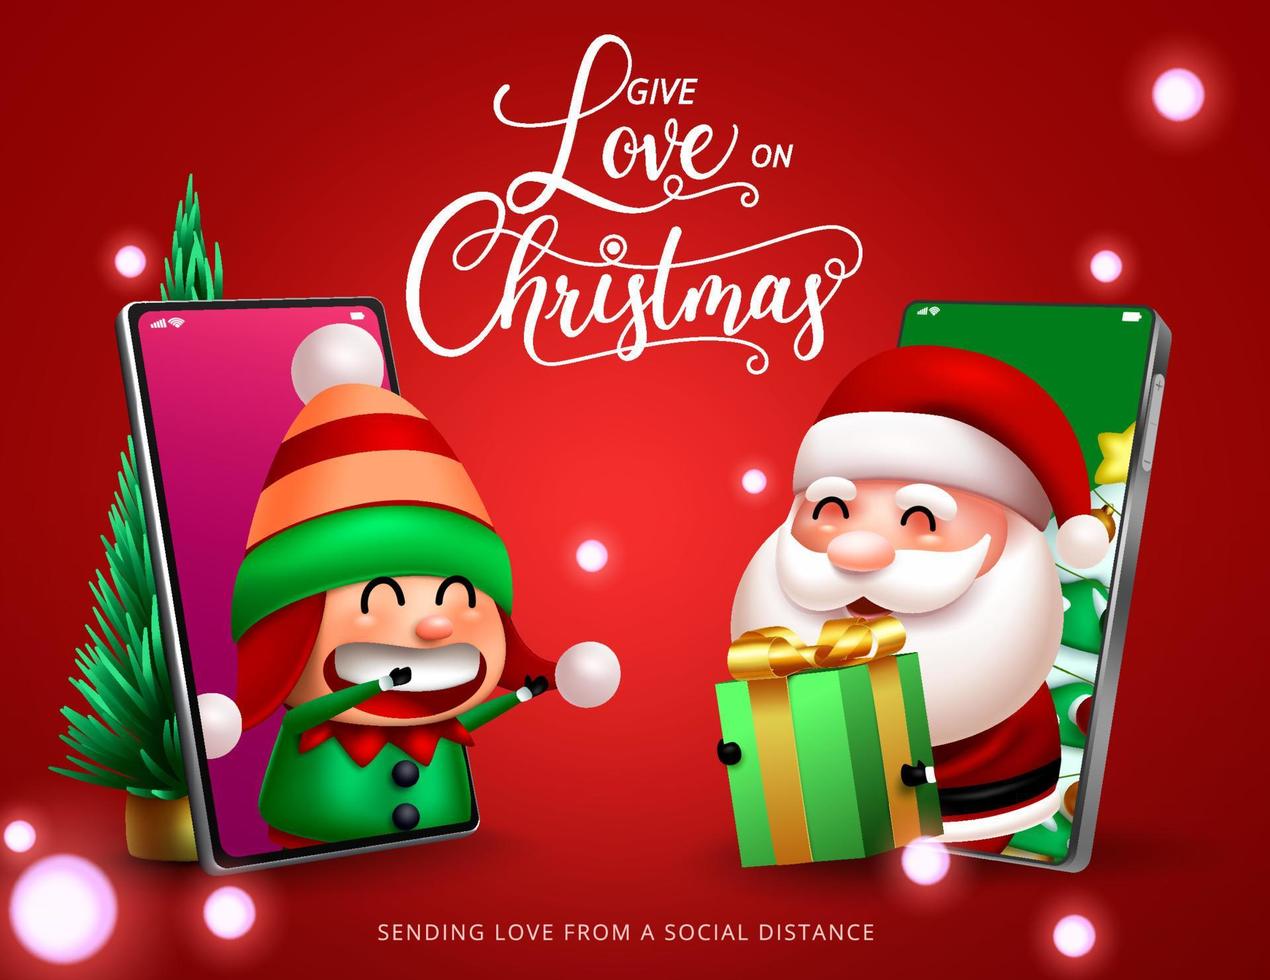 Weihnachtsgeschenk, das Zeichenvektordesign gibt. Geben Sie Liebe am Weihnachtstag Text mit virtuellem Weihnachtsmann und süßem Elfencharakter im Handy, das Geschenk für die Weihnachtsferienzeit hält. vektor